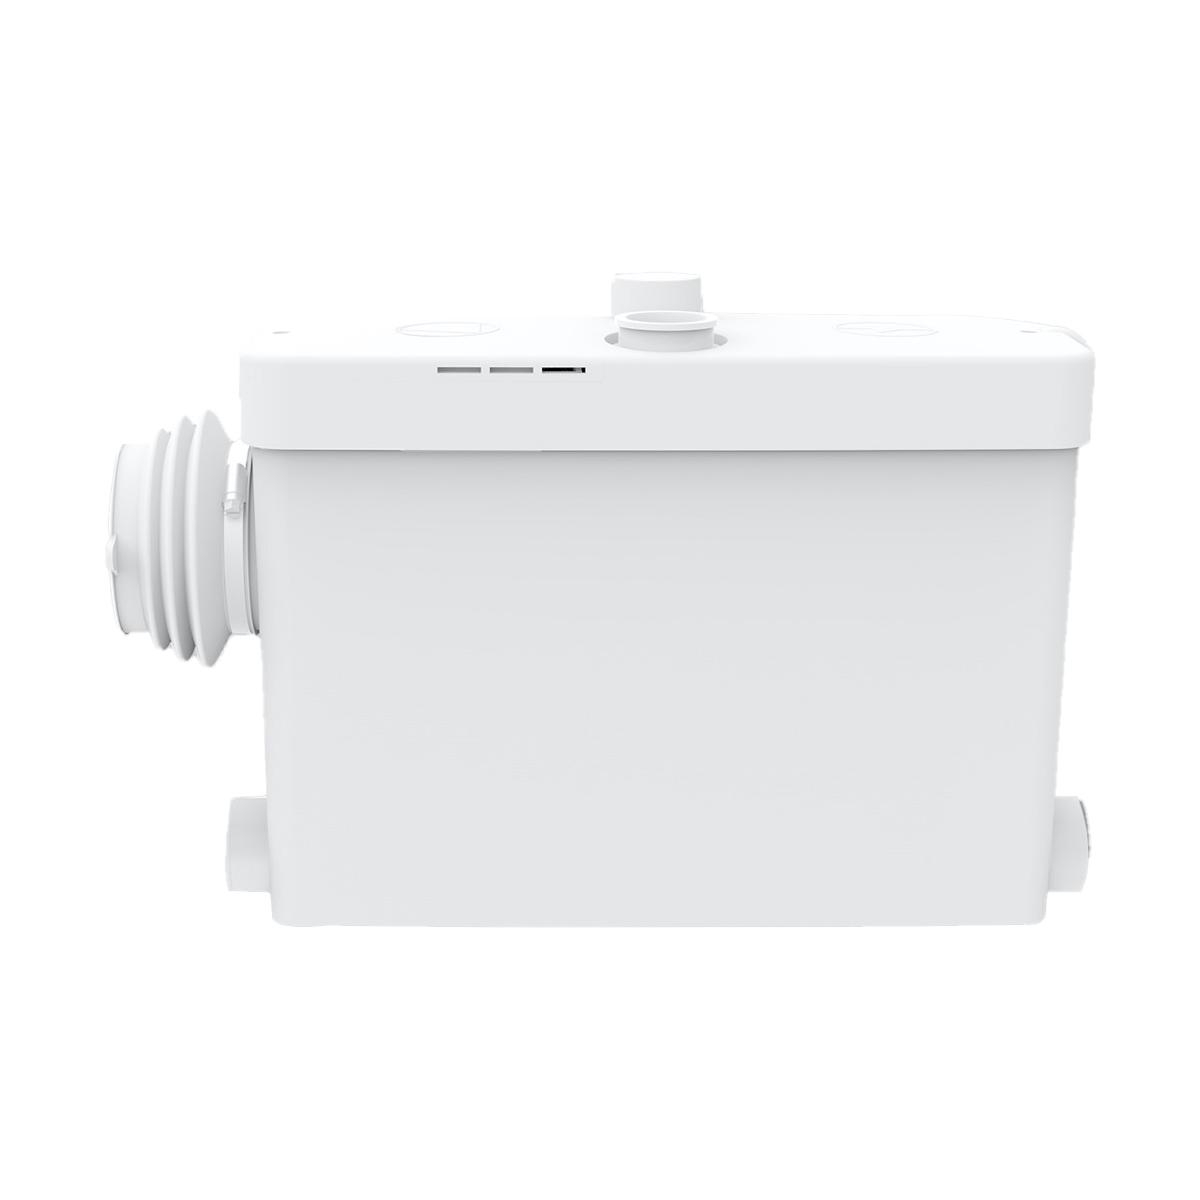 Broyeur sanitaire Maldic SENSE V4 Compact pour salles de bains complètes avec toilettes suspendues avec la référence 405 de la marque MALDIC